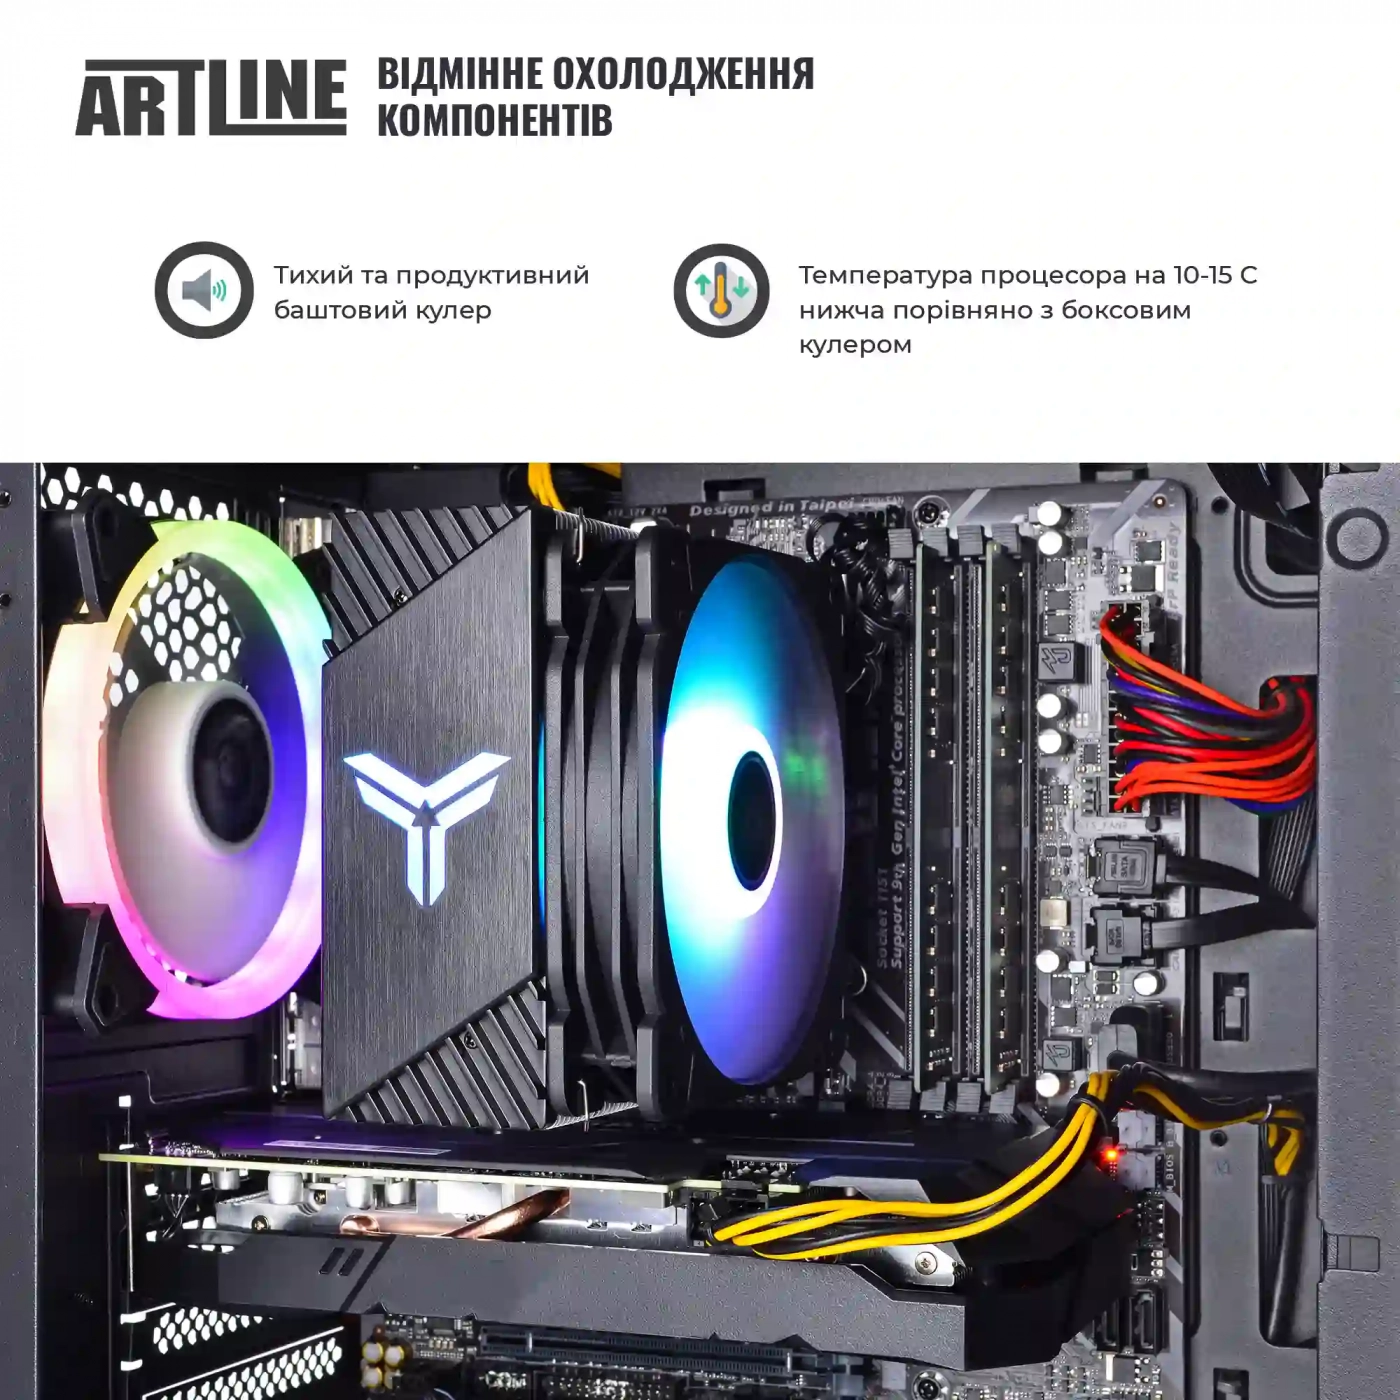 Купить Компьютер ARTLINE Gaming X39v66 - фото 3